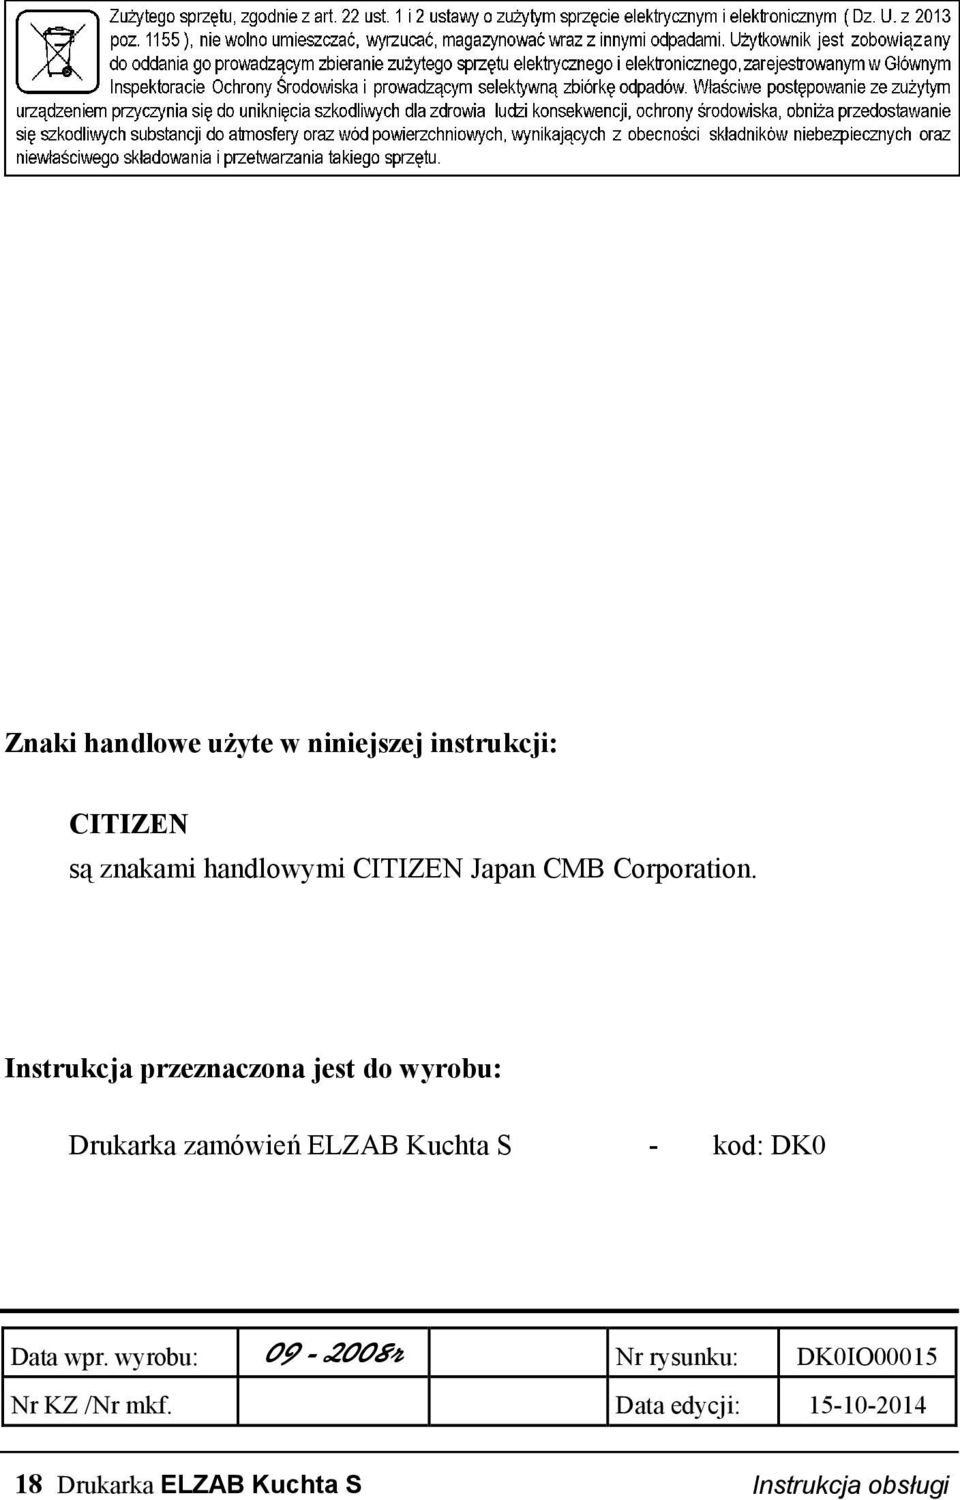 Instrukcja przeznaczona jest do wyrobu: Drukarka zamówień ELZAB Kuchta S - kod: